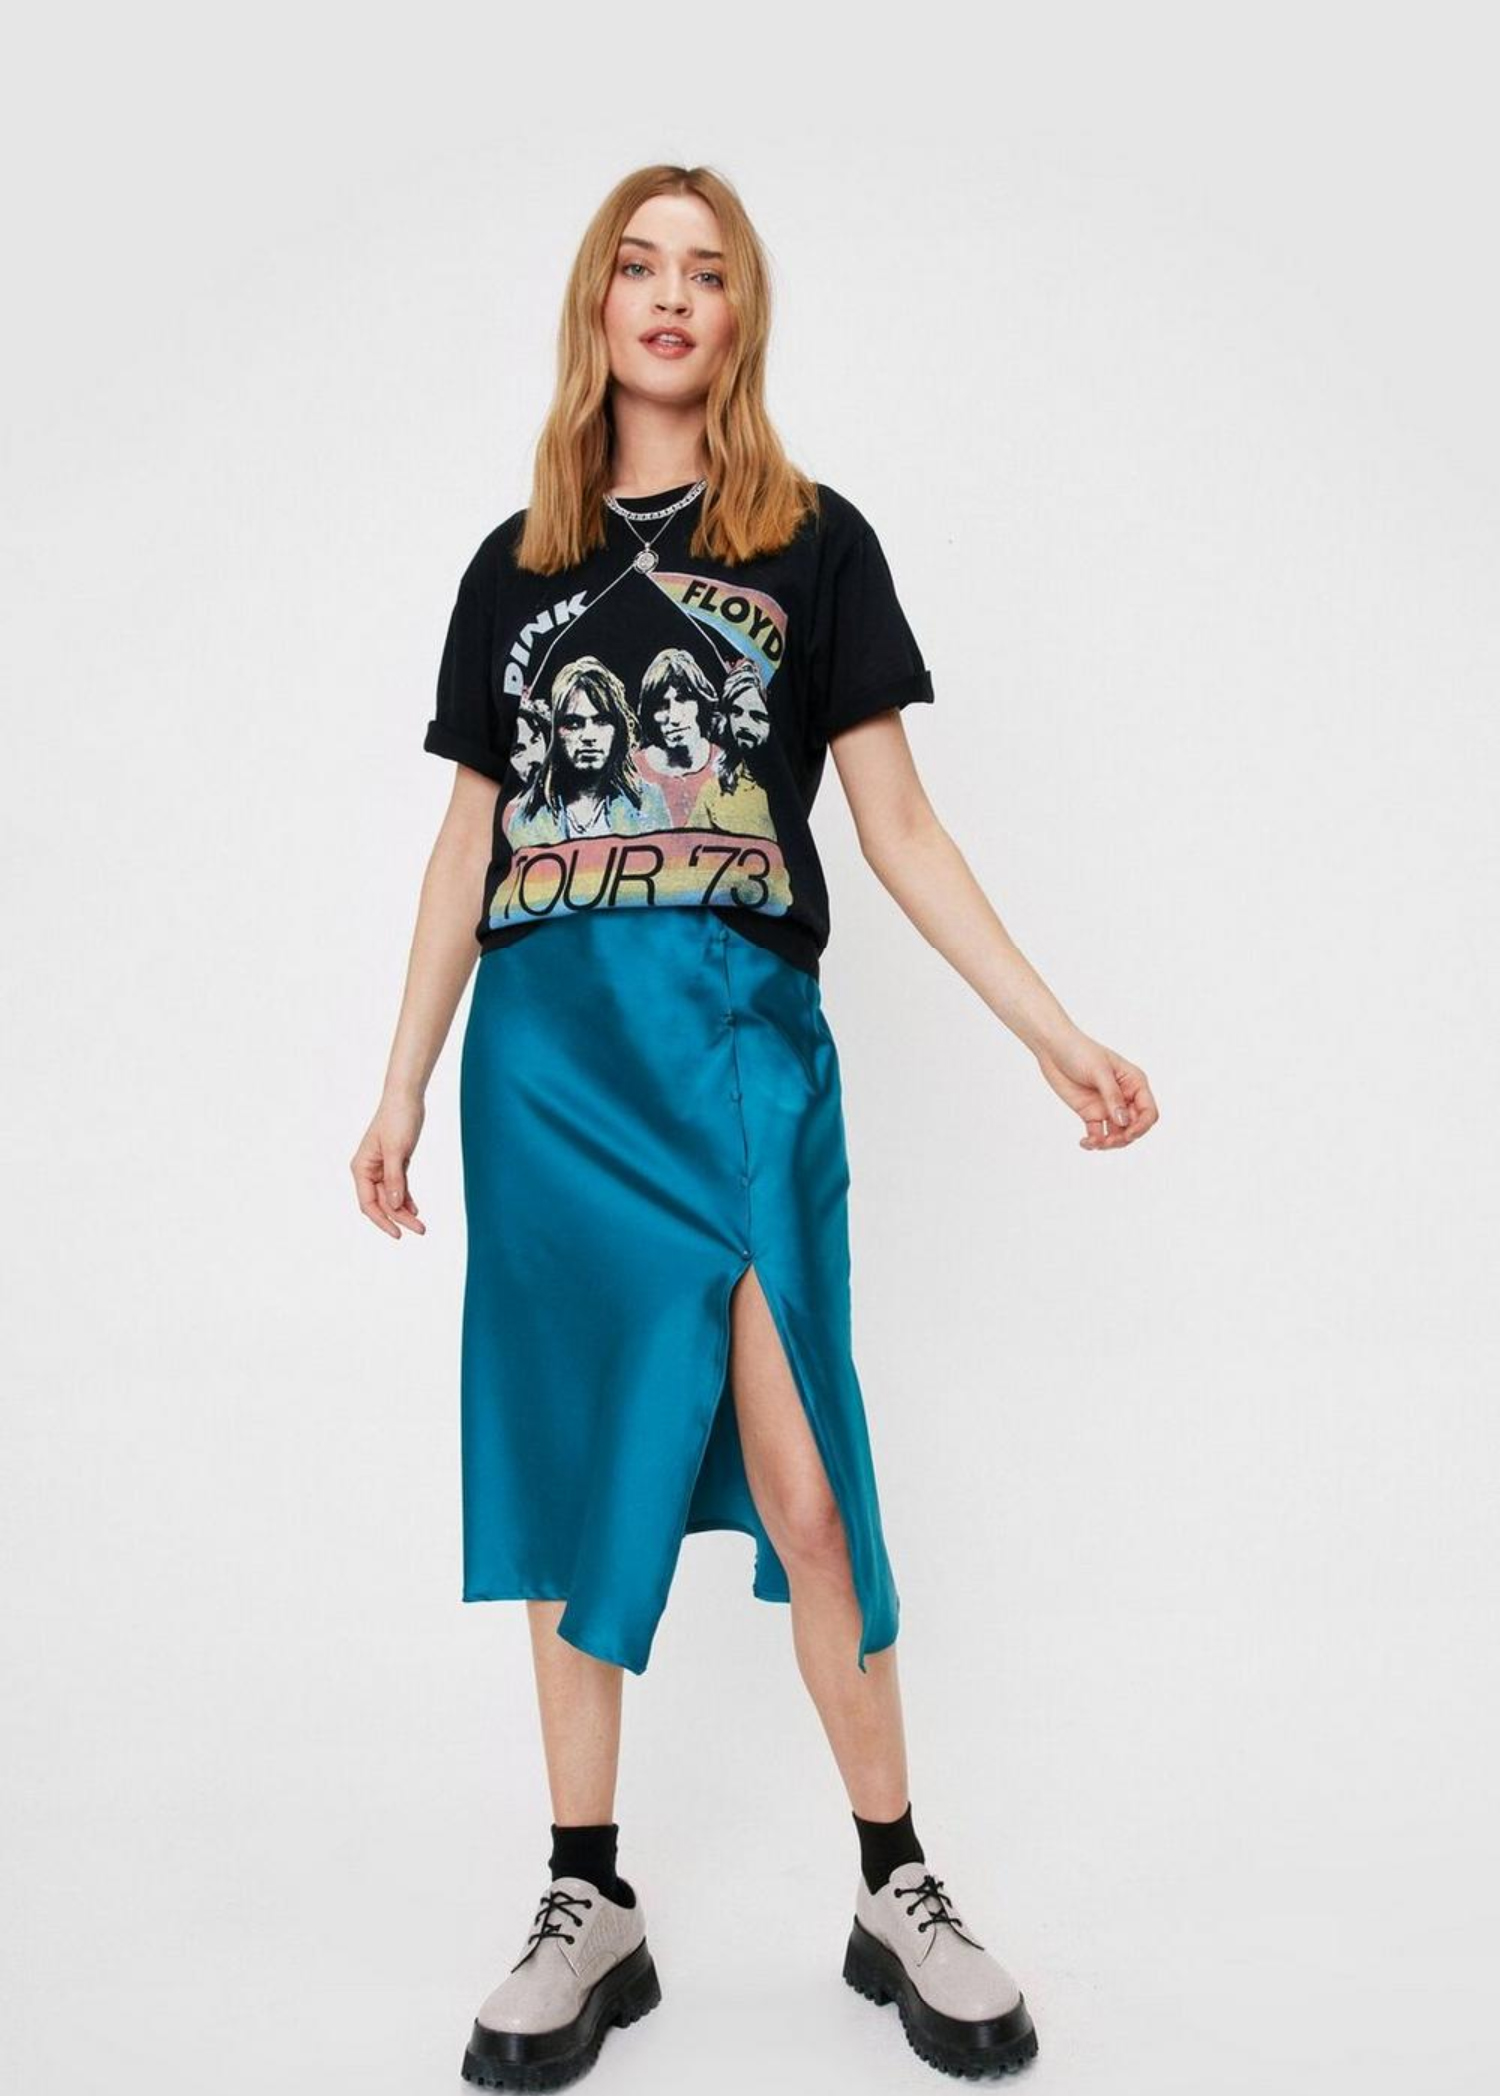 Multiple Color Women Casual Satin Midi Skirt with Slit Summer Skirt 2022